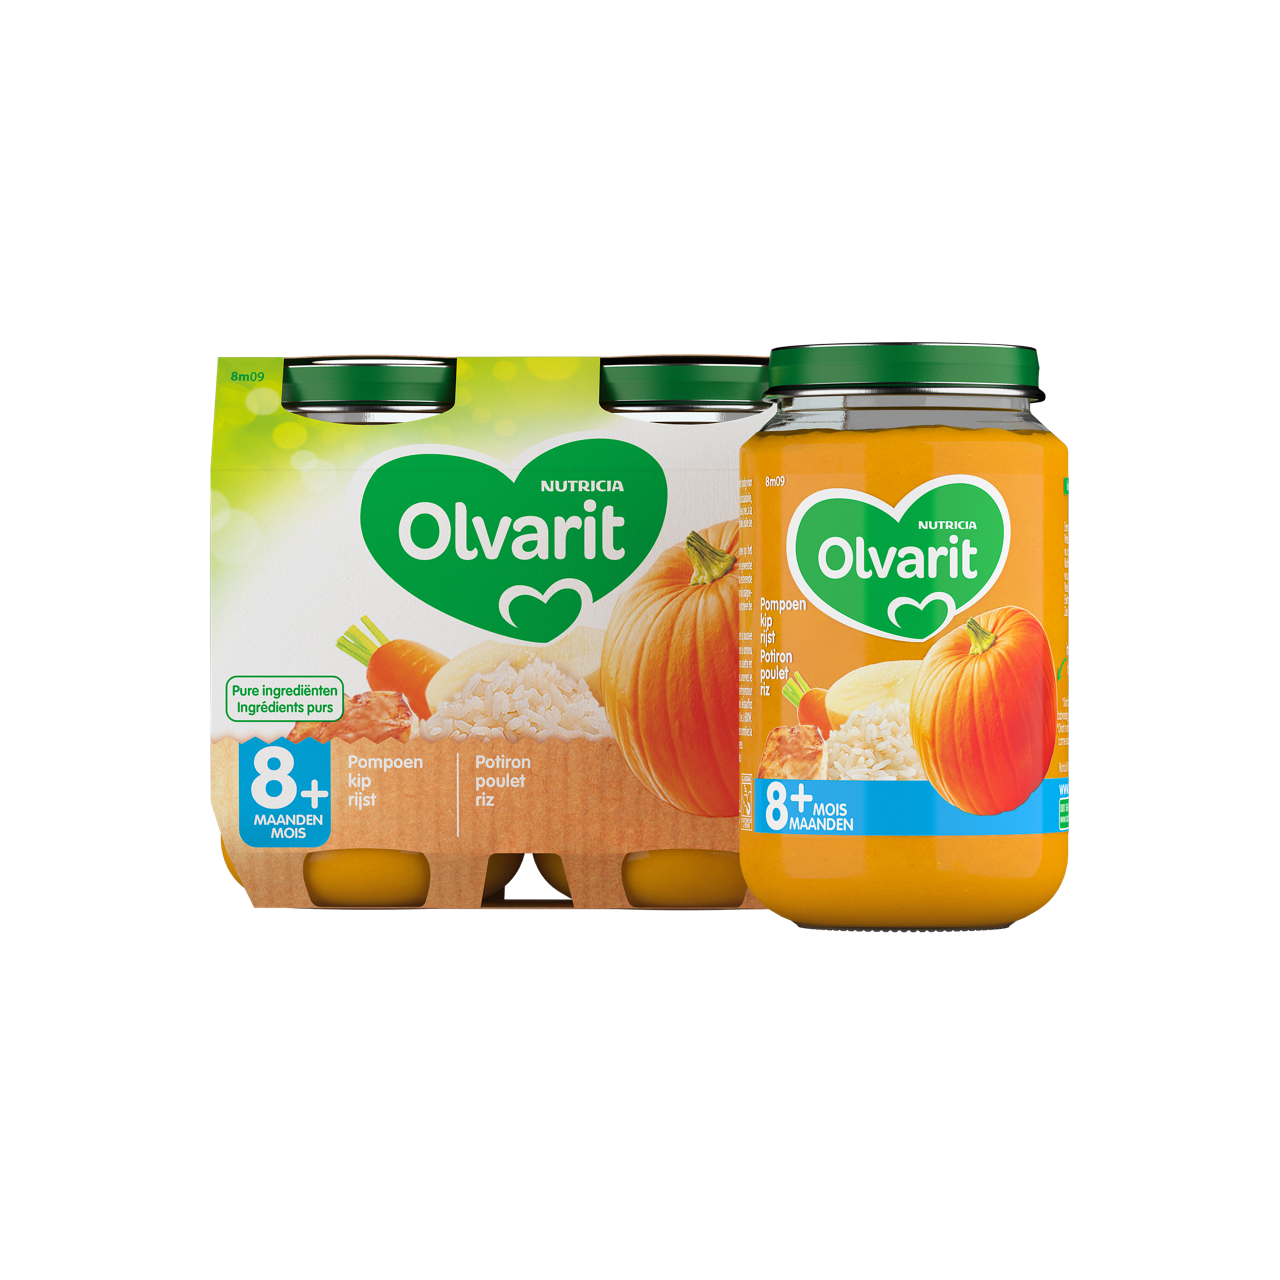 Olvarit Potiron poulet riz. Consultez notre site web Olvarit.be pour plus d'info sur alimentation pour bébé et les produits Olvarit.